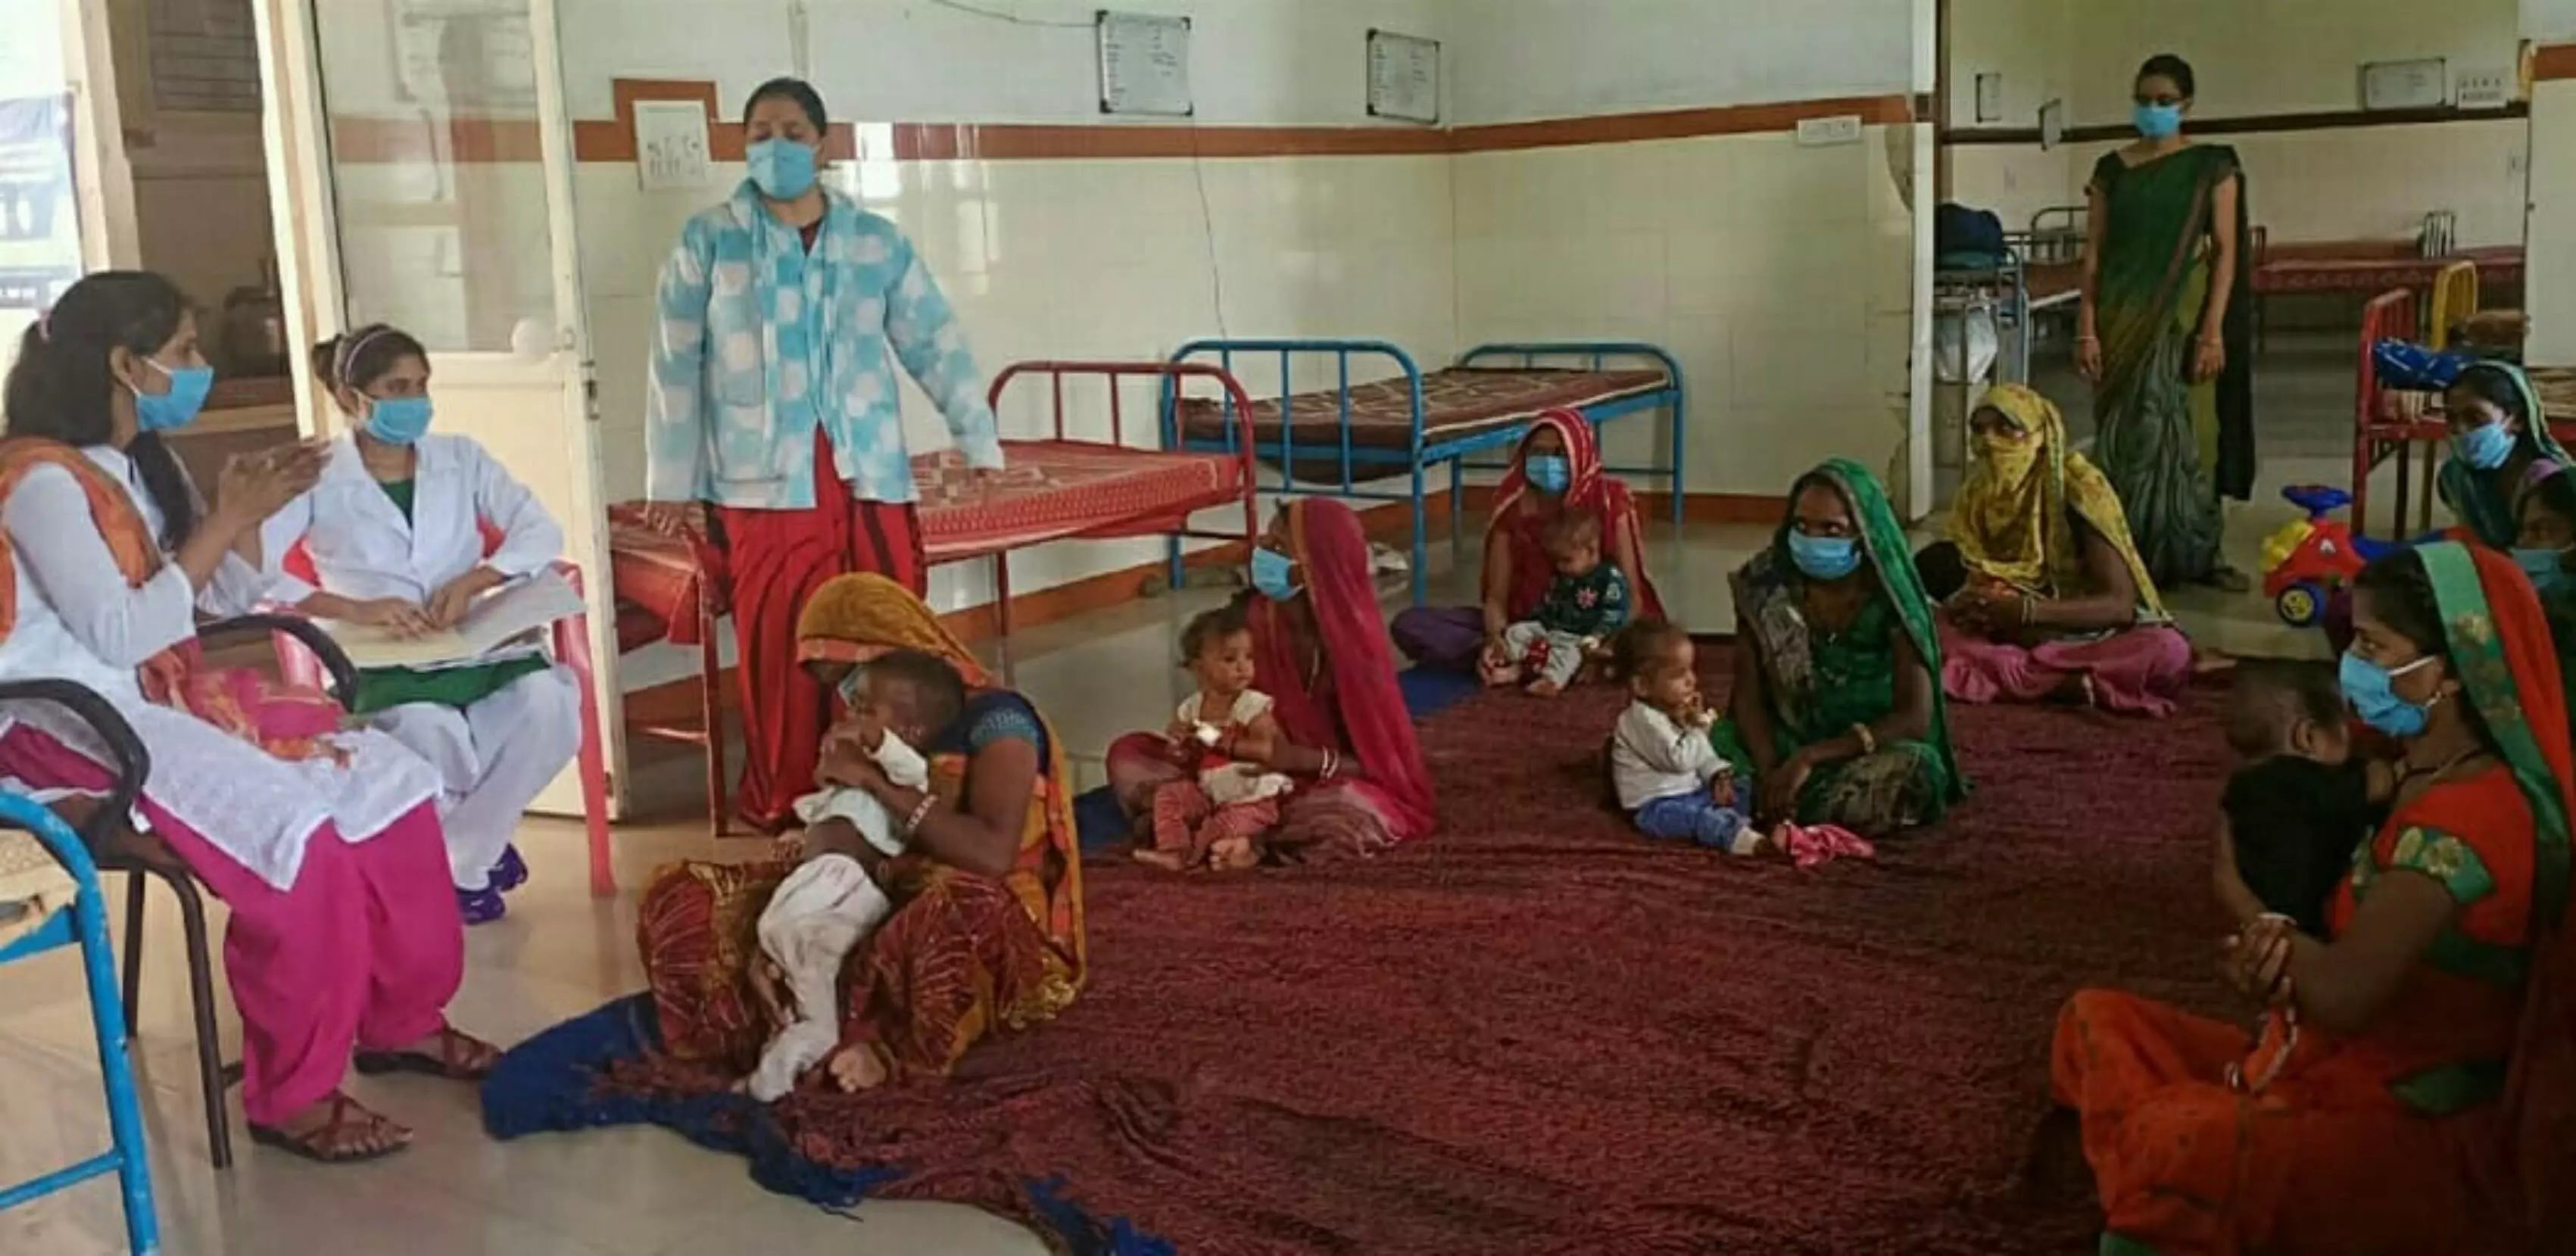 मध्य प्रदेश: कोरोना काल में कमजोर हुई कुपोषण से जंग, पोषण पुनर्वास केंद्र पर नहीं पहुंच रहे बच्चे